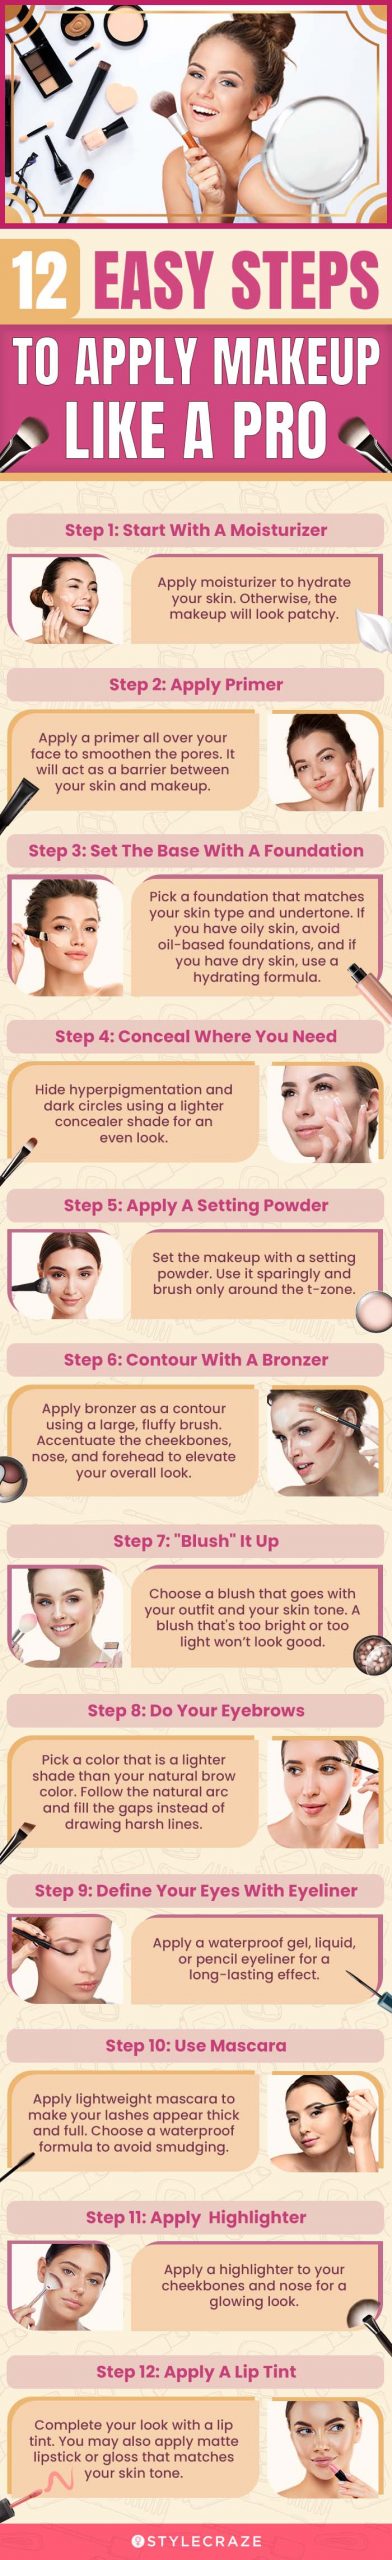 Styrke Sammentræf tandlæge How To Apply Makeup Like A Pro